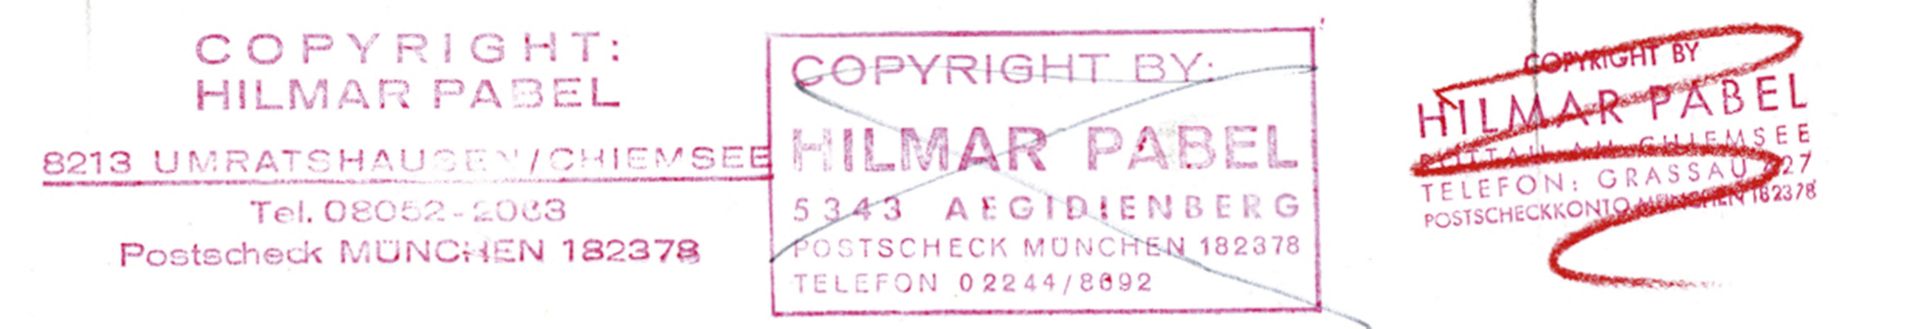 Hilmar Pabel, 1910-2000 - Bild 2 aus 2